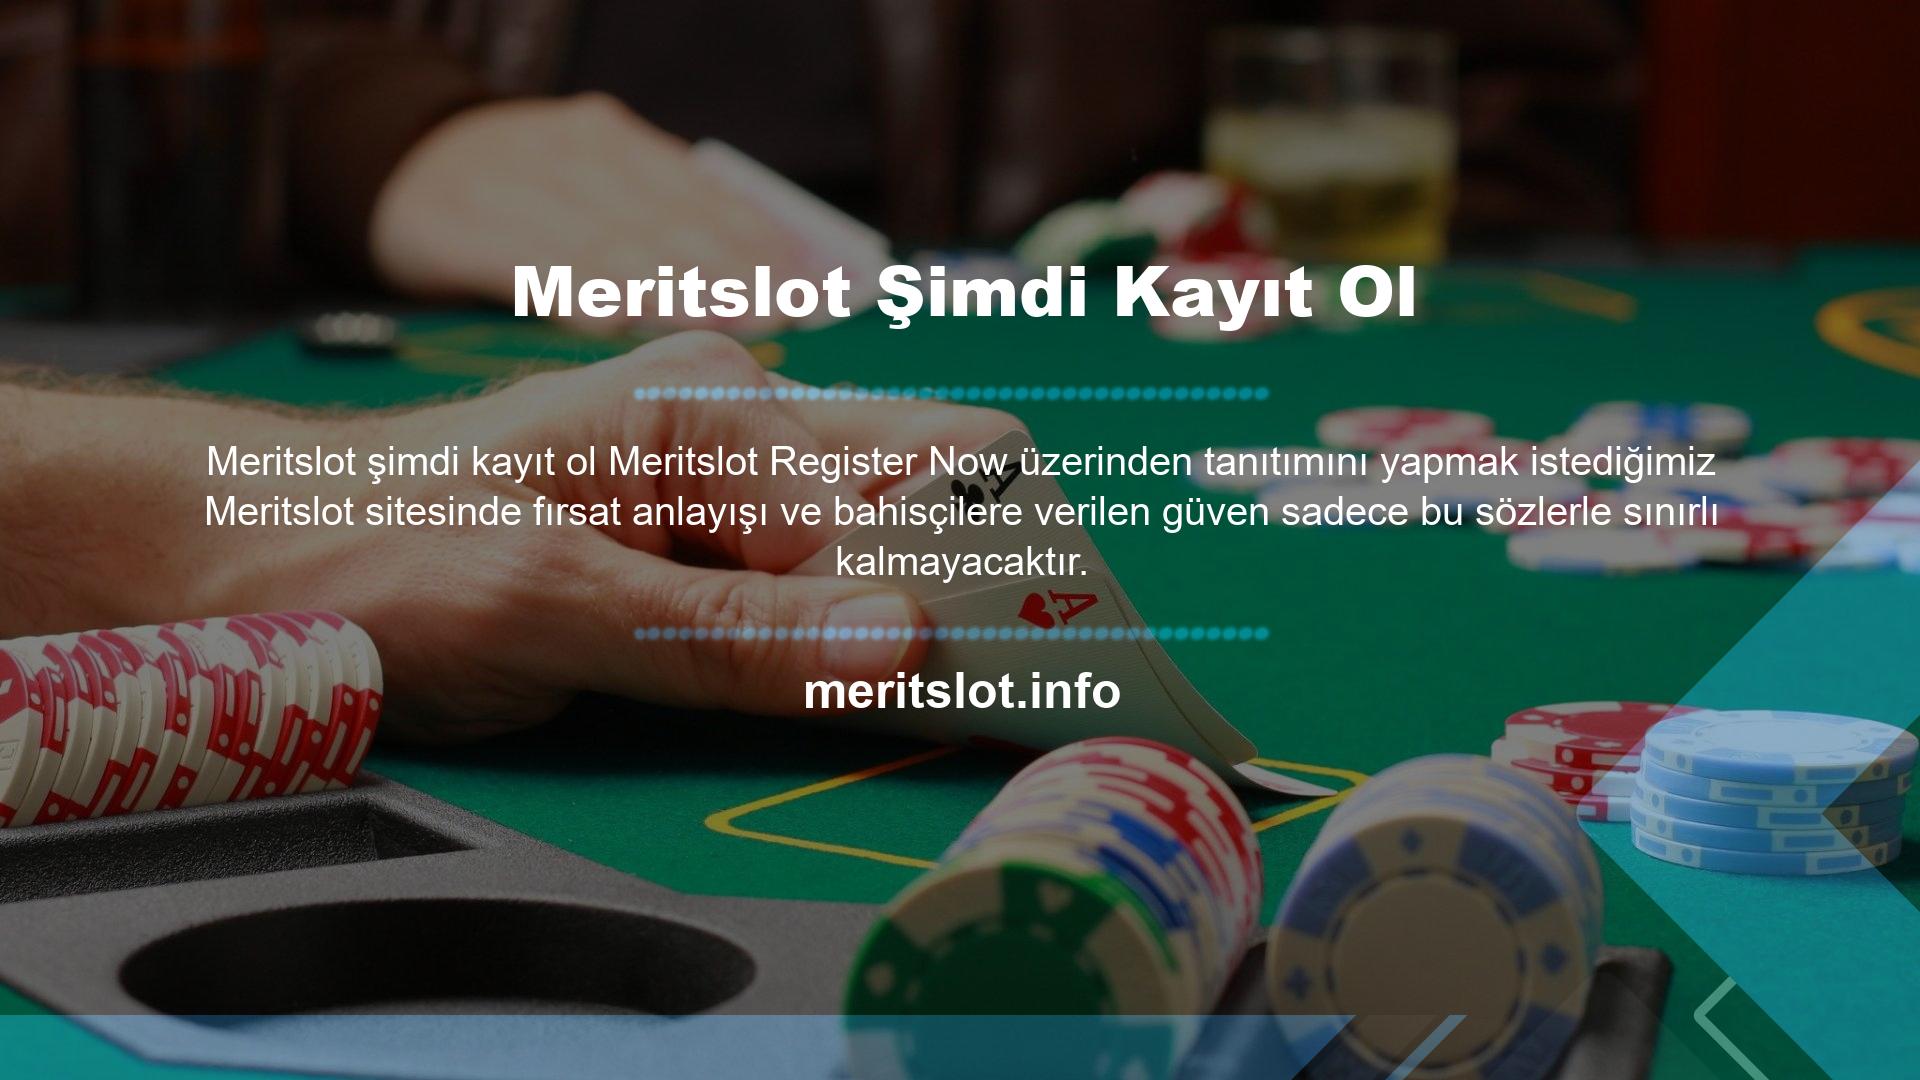 Meritslot, Türk sunucularında aktif bahis hizmetleri sunmakta ve uzun yıllardır dünya çapında faaliyet göstermektedir